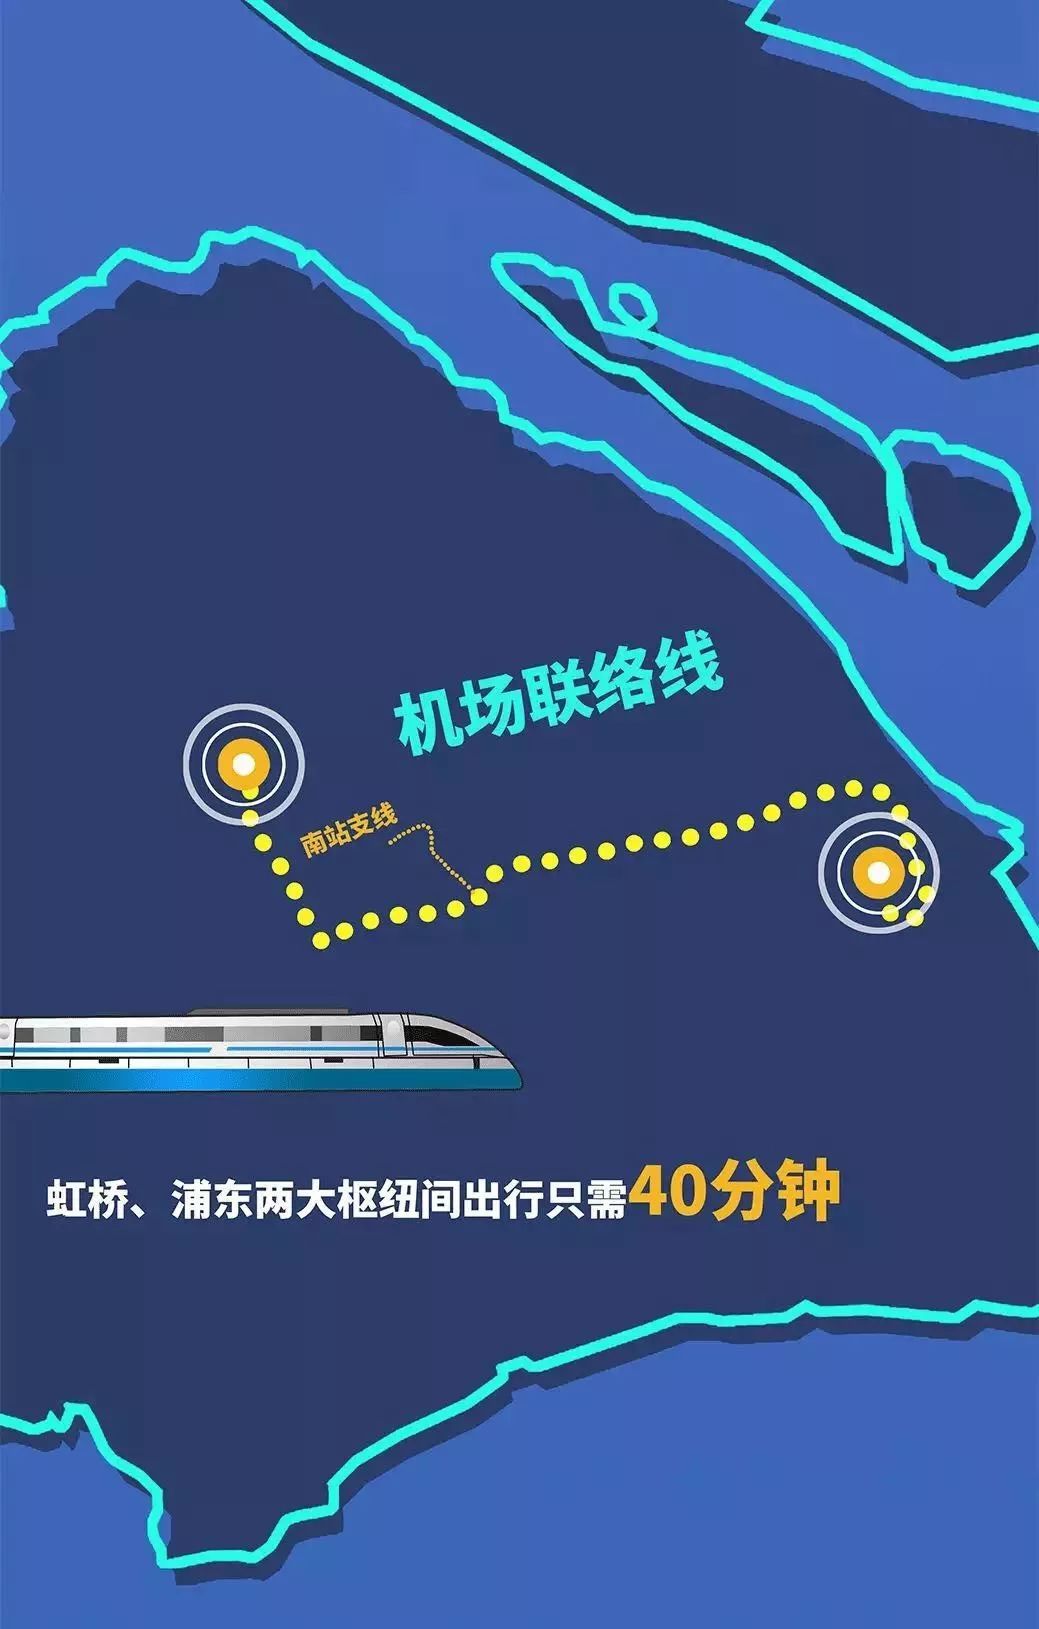 预计于年底实现上海虹桥63浦东仅40分钟